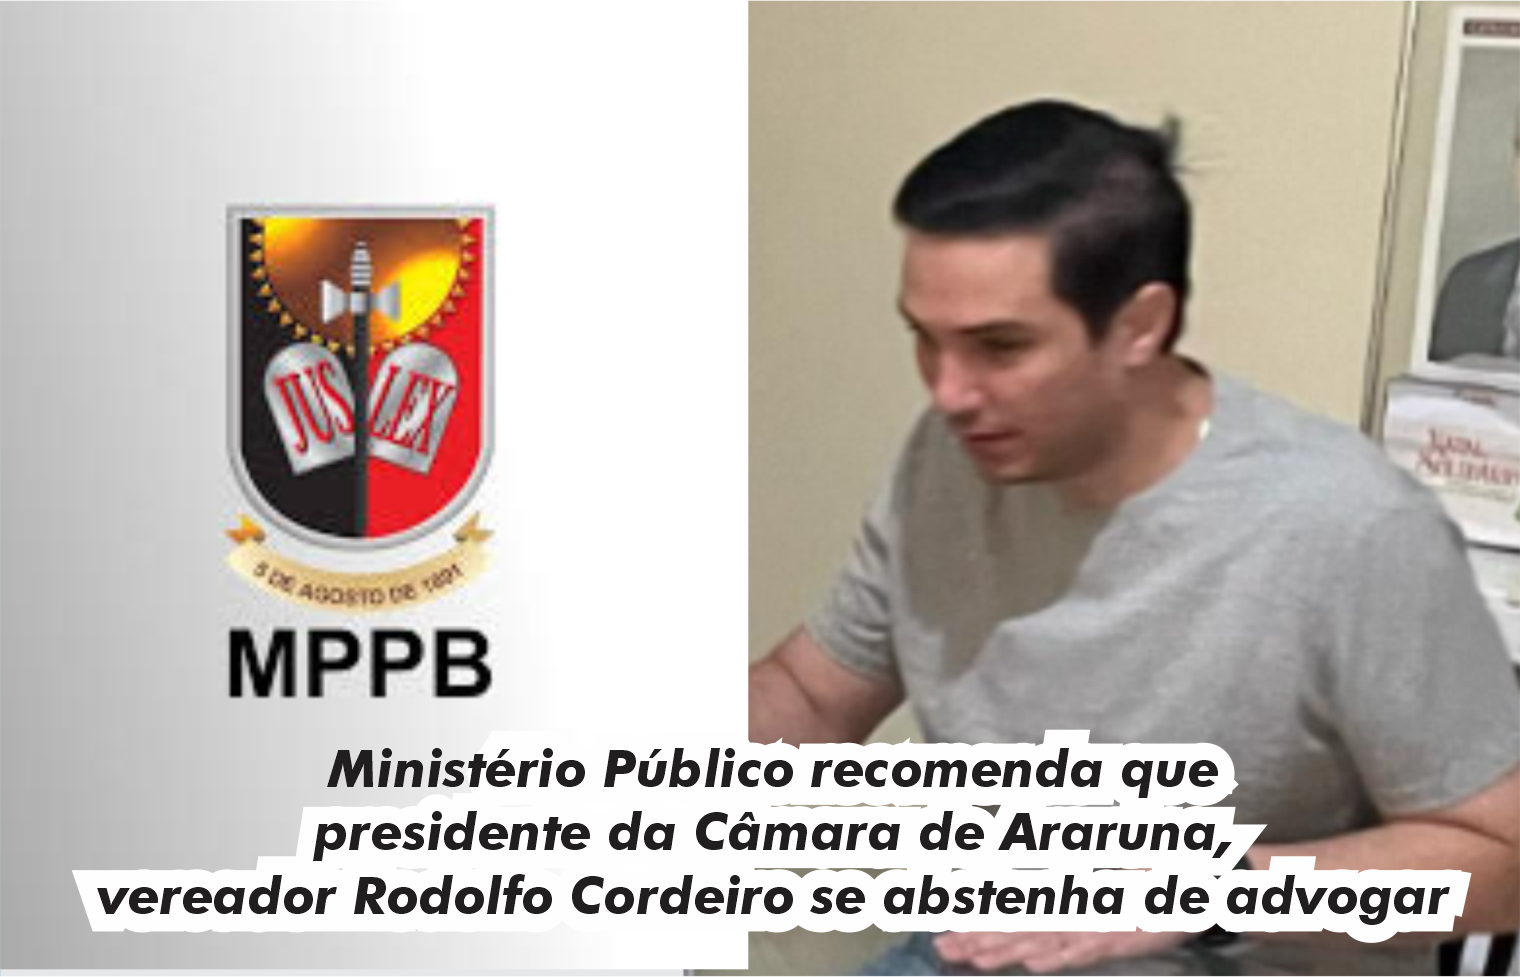 Ministério Público recomenda que presidente da Câmara de Araruna, vereador Rodolfo Cordeiro se abstenha de advogar